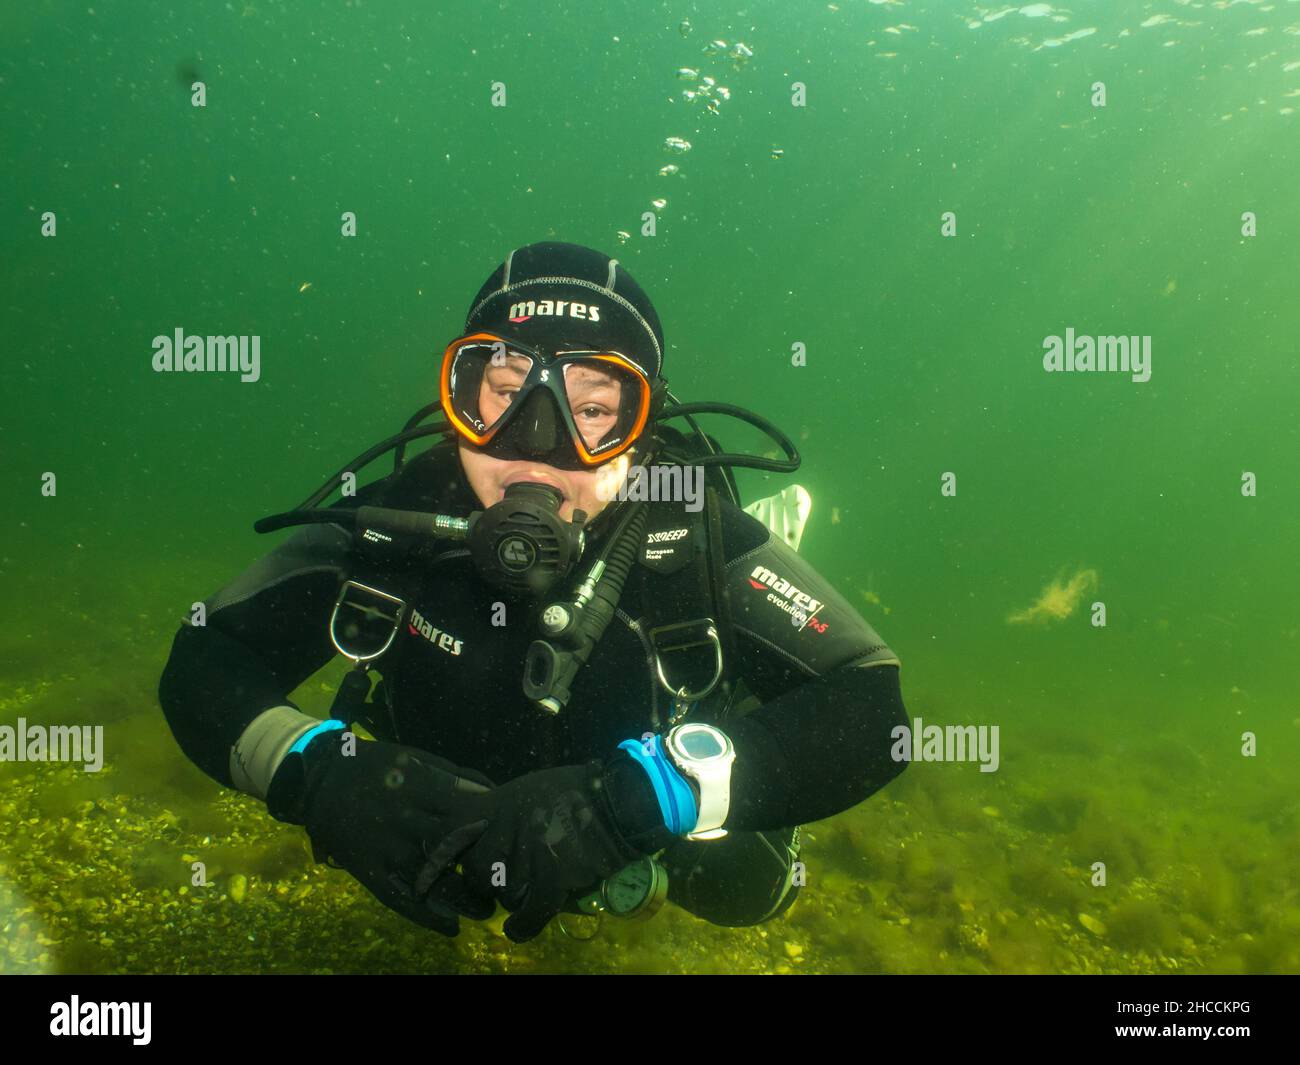 5 settembre 2021 - Malmo, Svezia: Una subacquea femminile illuminata dai raggi del sole che penetrano nell'acqua. Le immersioni subacquee sono state uno sport sempre più popolare durante la pandemia del coronavirus Foto Stock